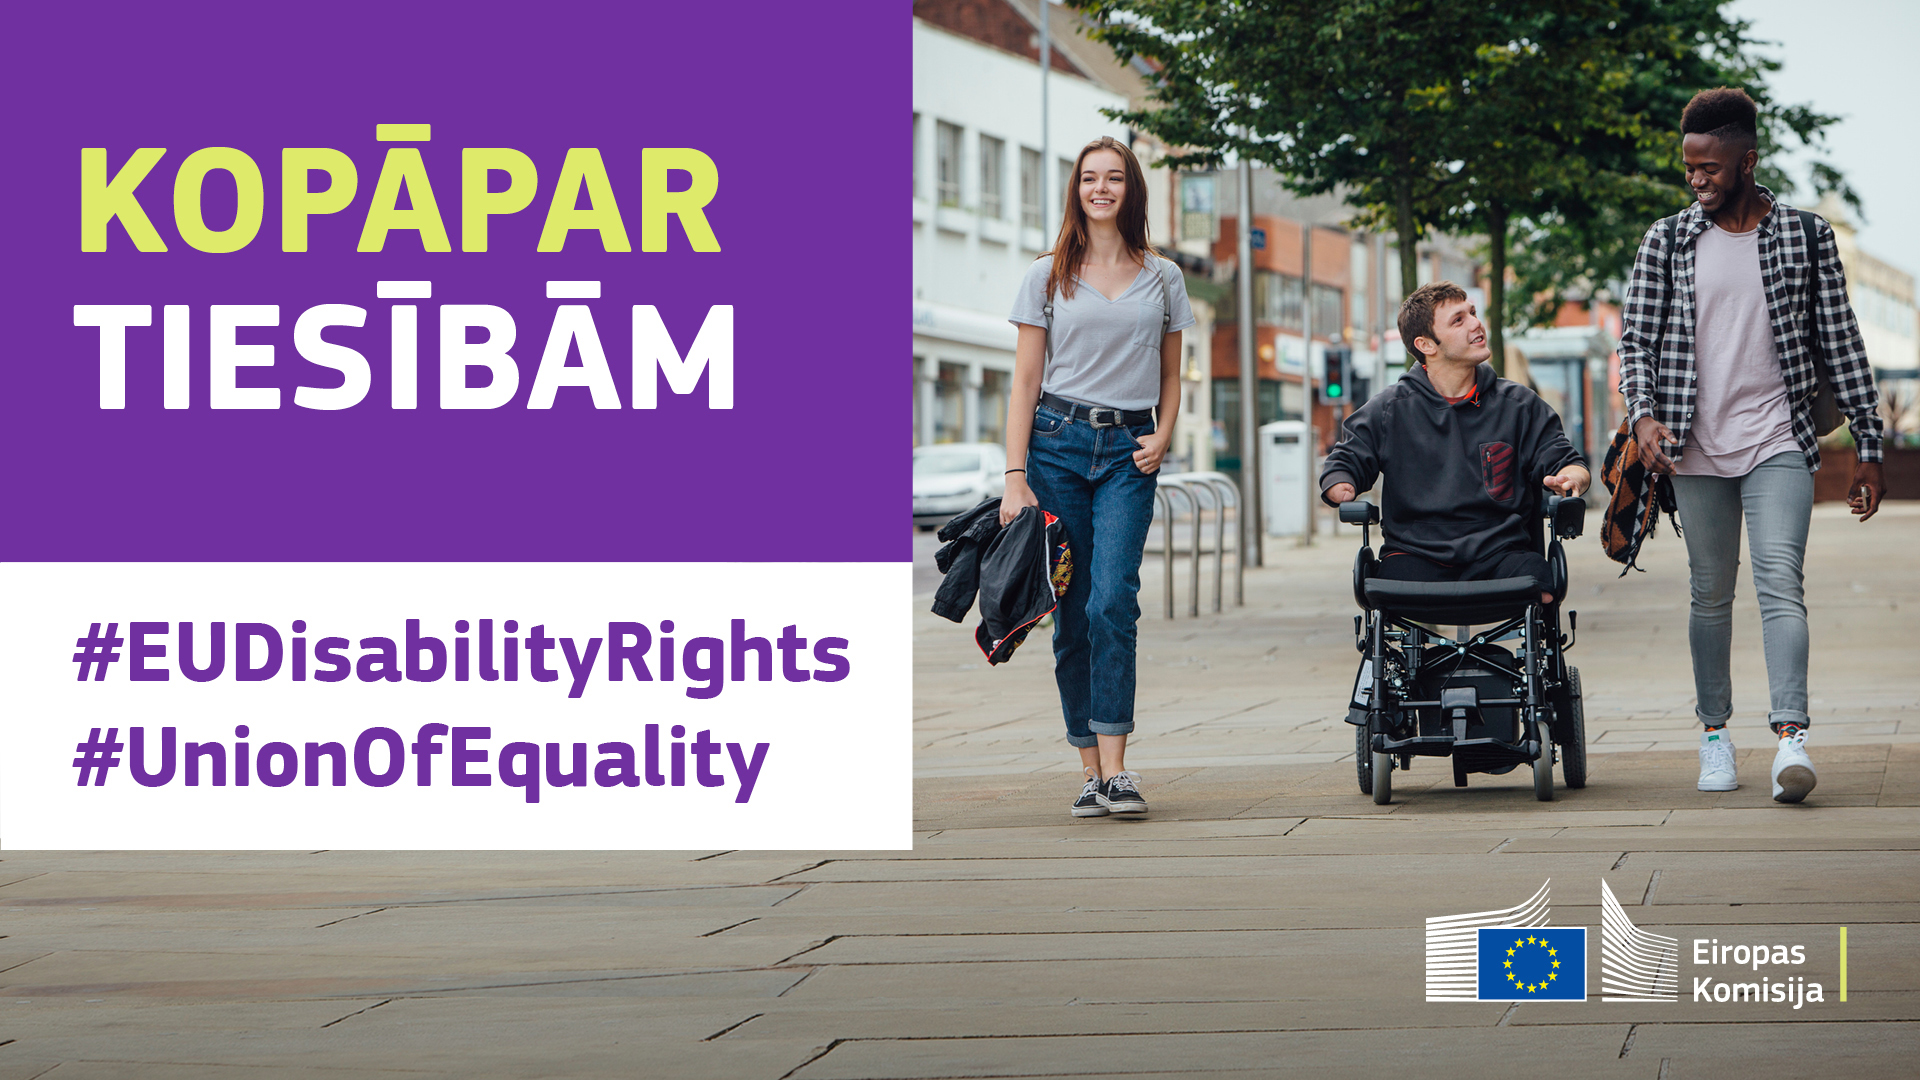 Trīs jaunieši pastaigājas pilsētā. Viens no viņiem pārvietojas ratiņkrēslā. Teksts: kopā par tiesībām, #EUDisabilityRights, #UnionOfEquality.